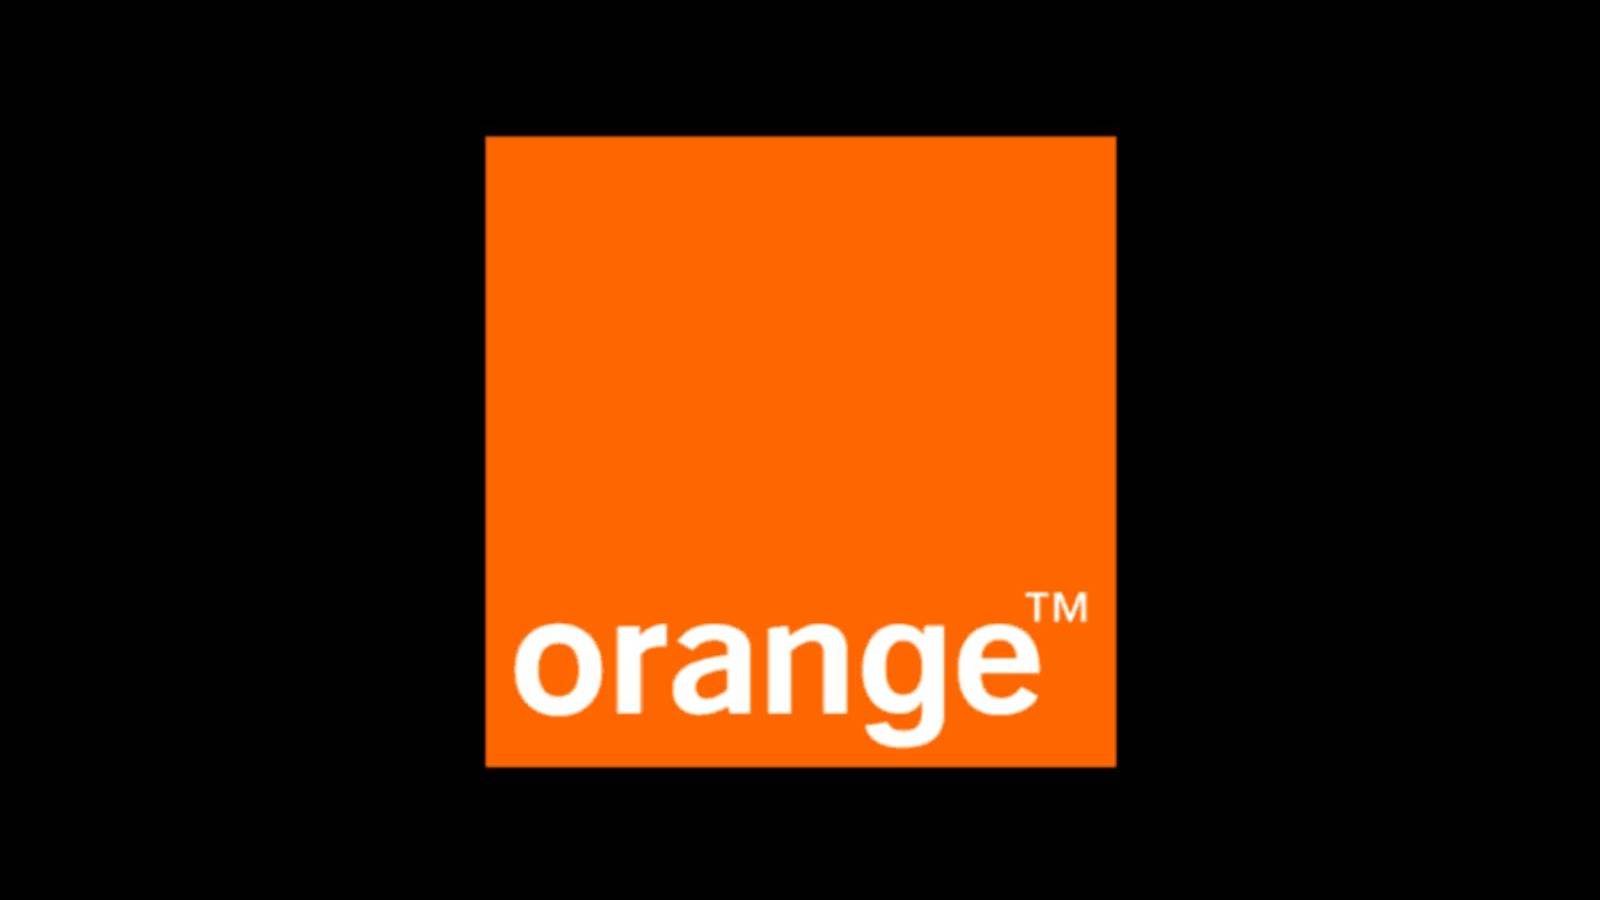 Orange Hotararea Clienti Offres GRATUITES Décembre